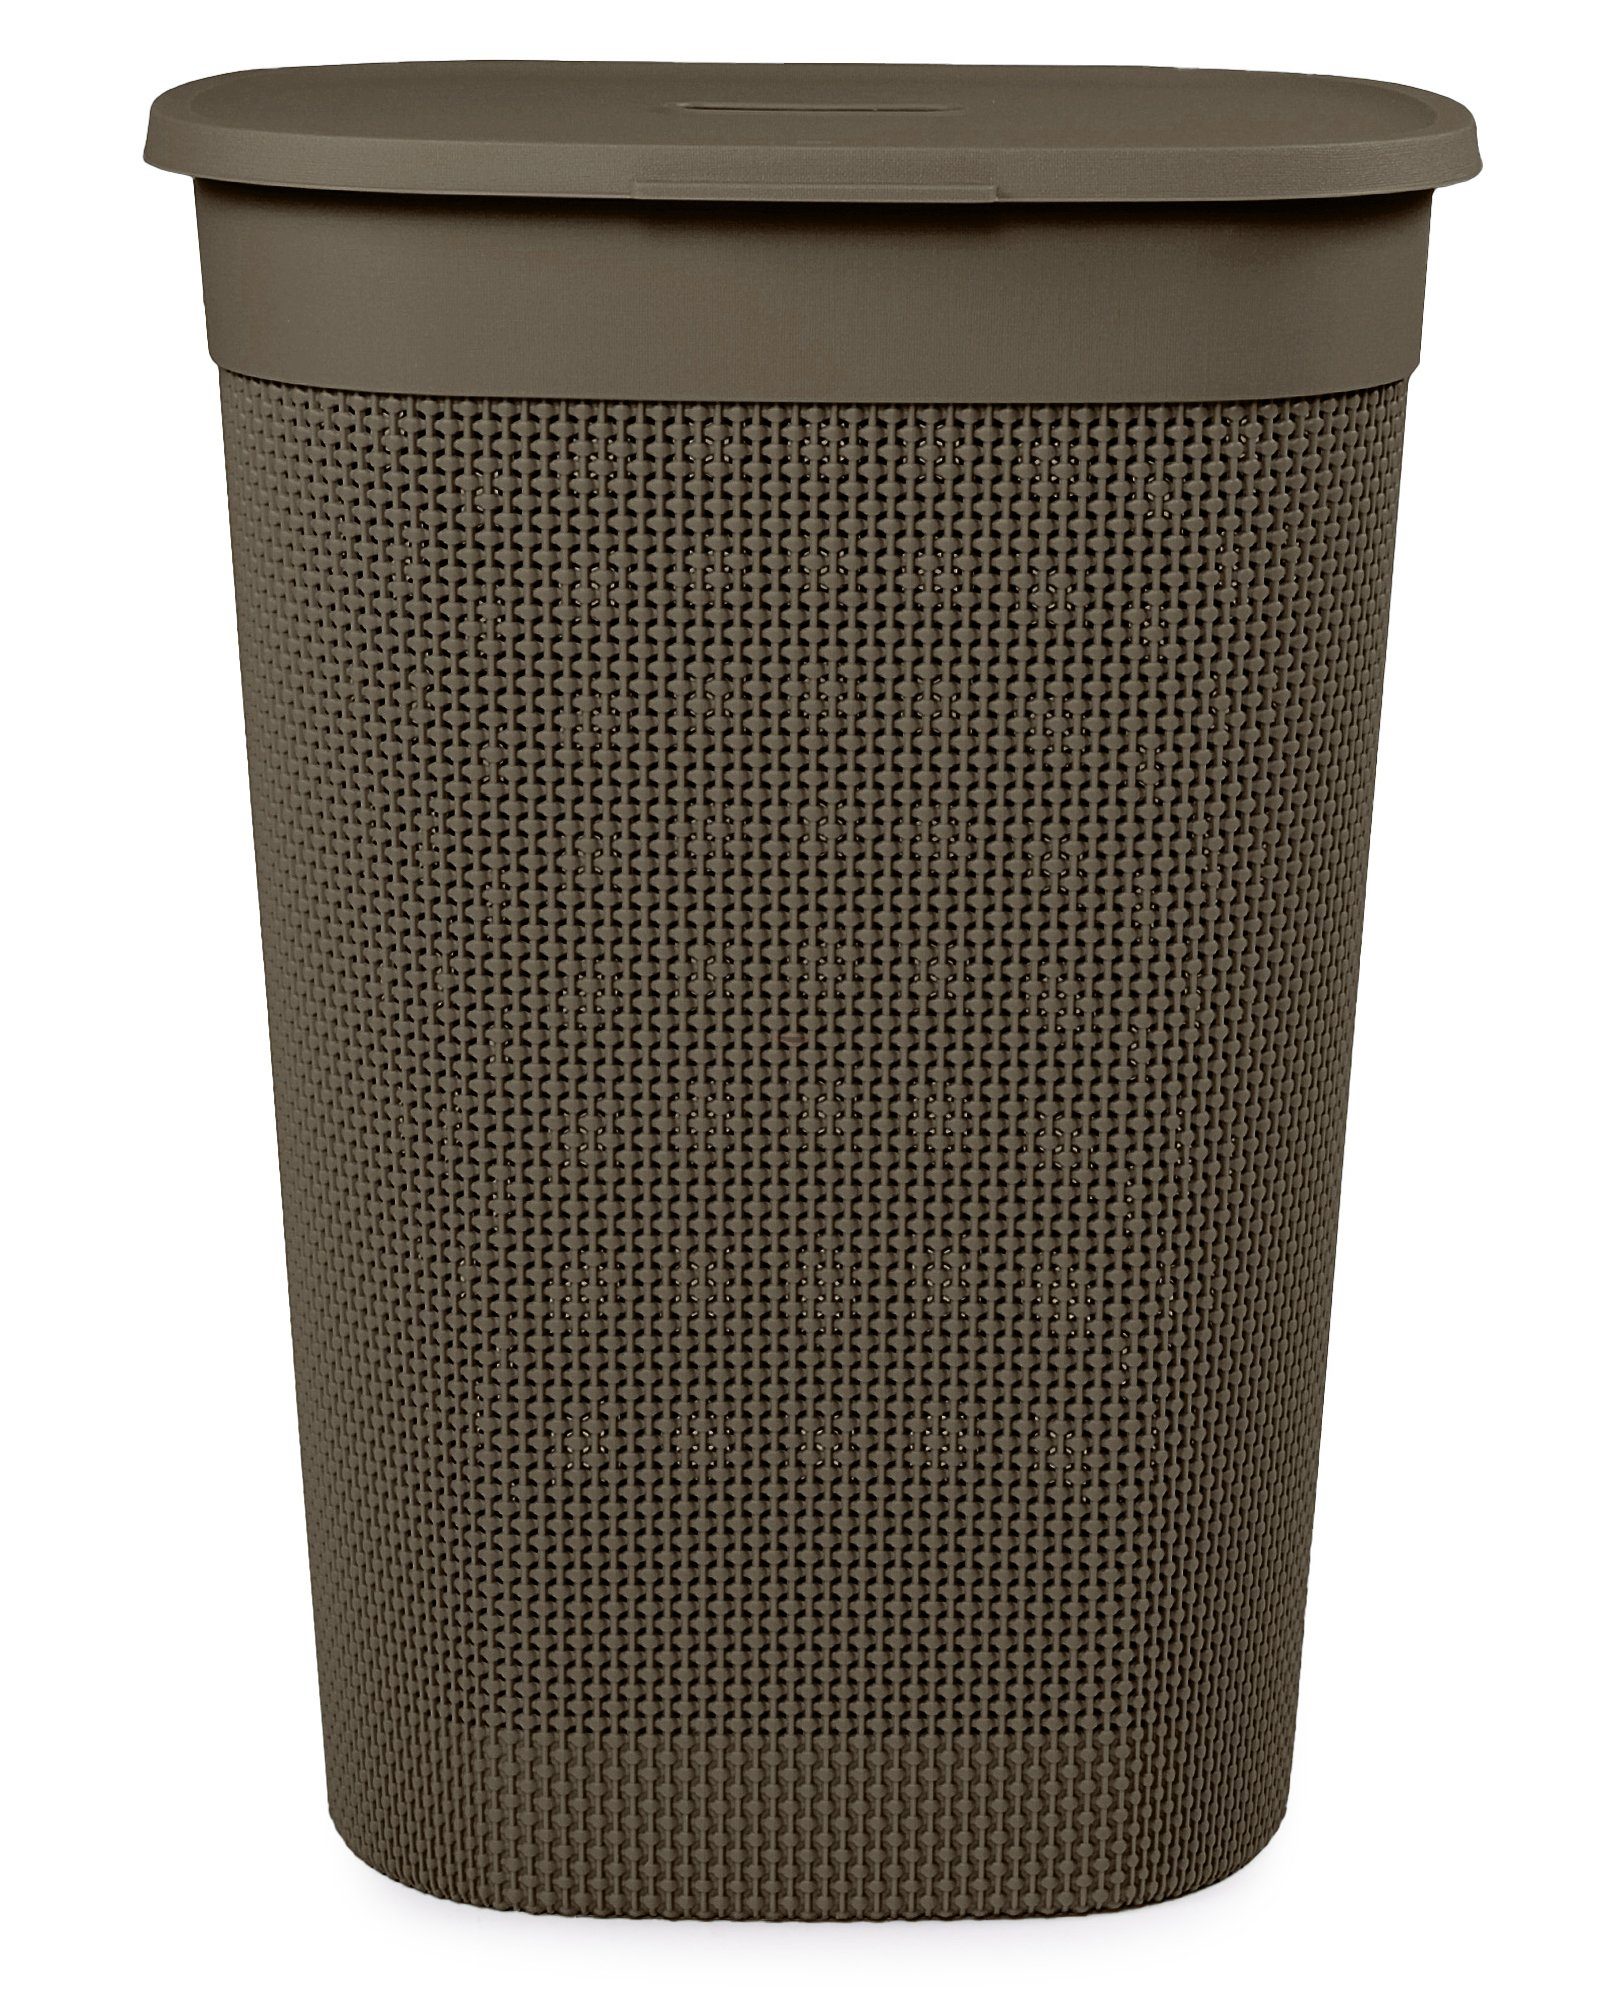 ONDIS24 Wäschebox Wäschekorb Filo aus Kunststoff 55 Liter, gut belüftet, neues italienisches Design, edle Verarbeitung Cappucino